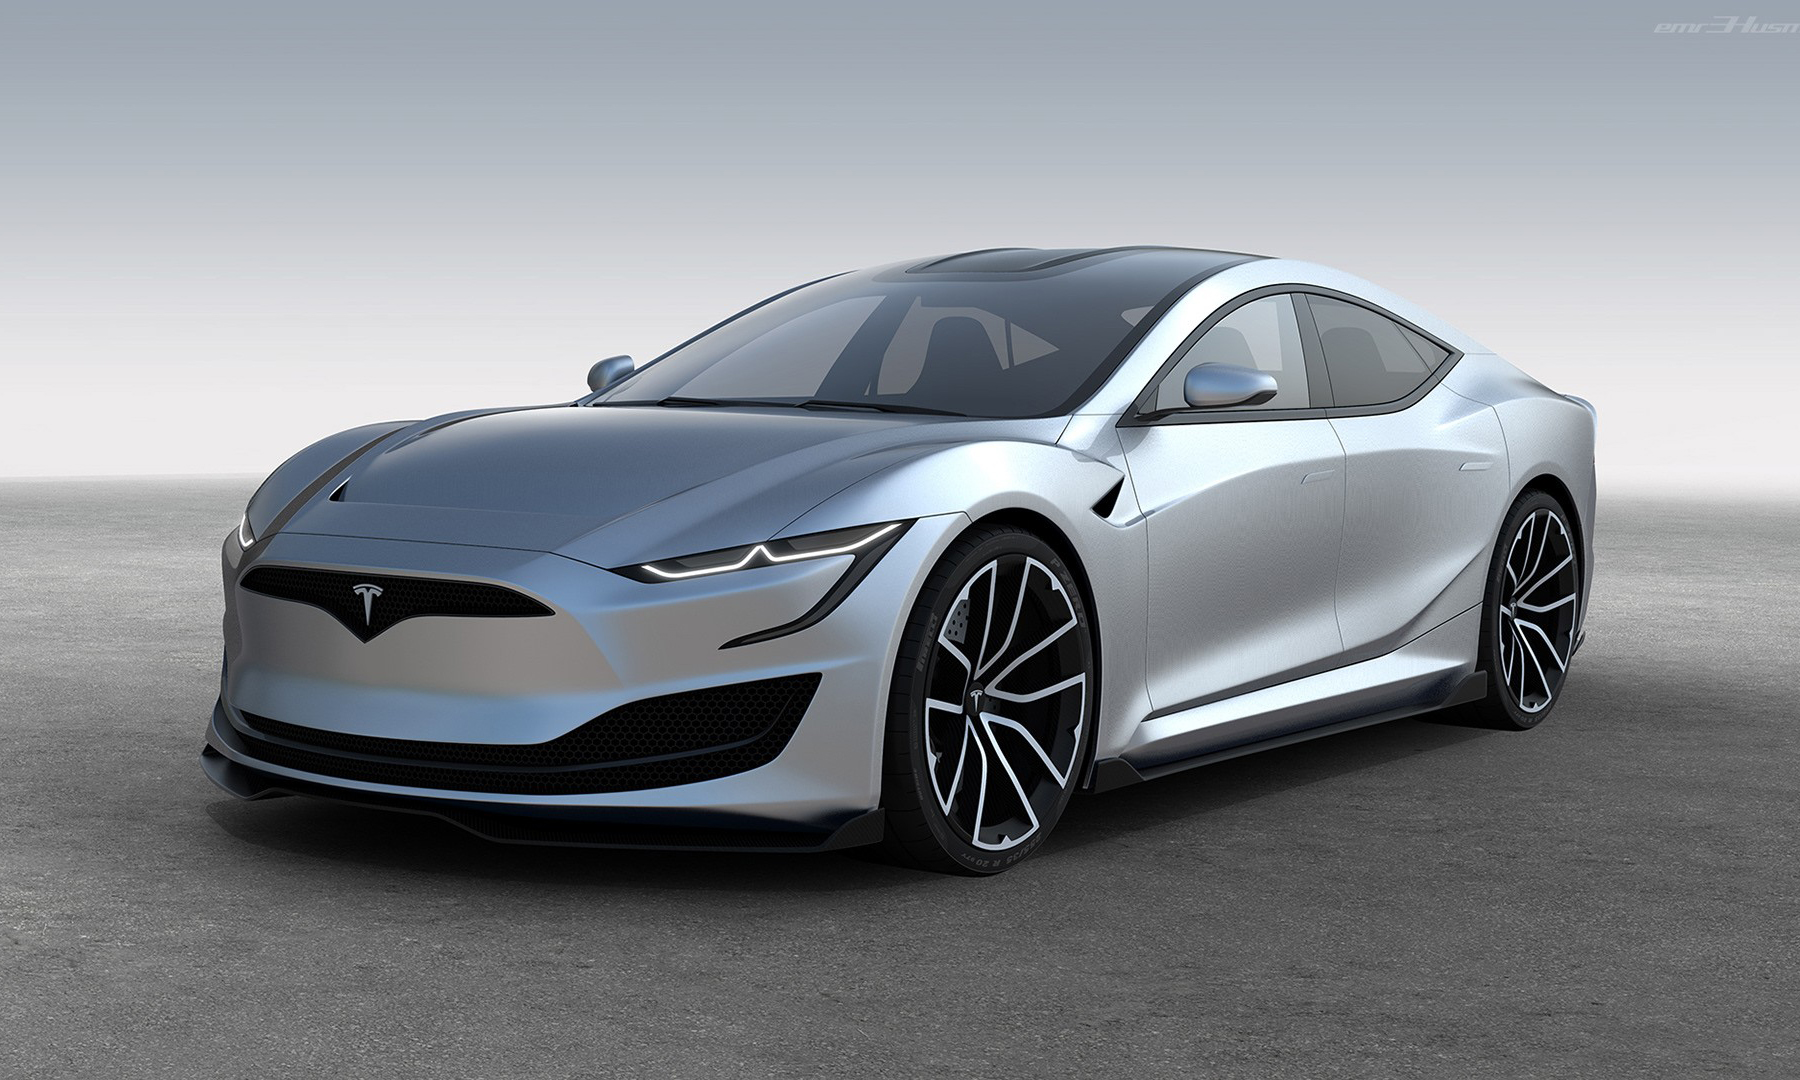 设计更加前卫，特斯拉 Model S 全新运动版曝光 NOWRE现客